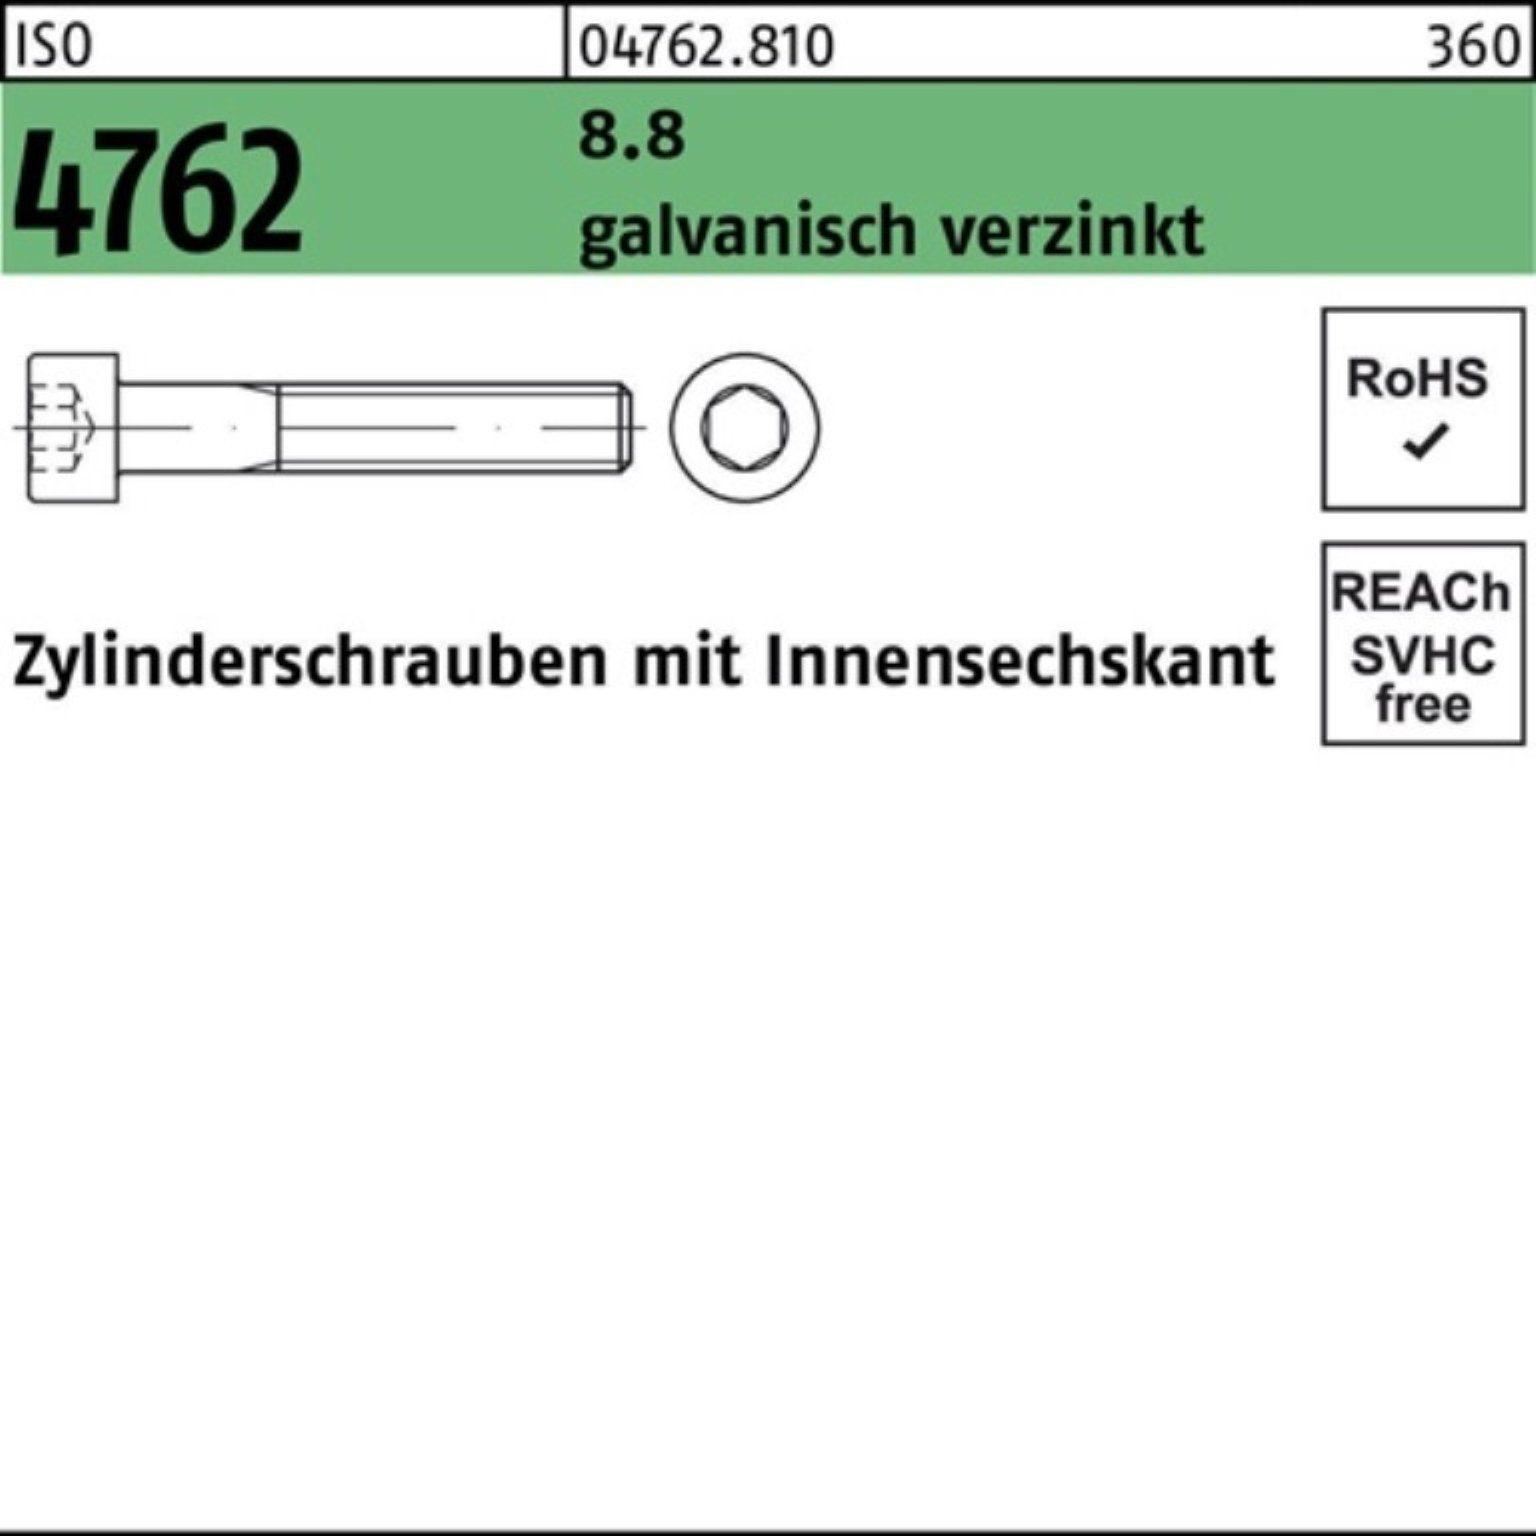 ISO Zylinderschraube 20 Zylinderschraube galv.verz. Pack Innen-6kt Reyher 8.8 M5x75 4762 200er